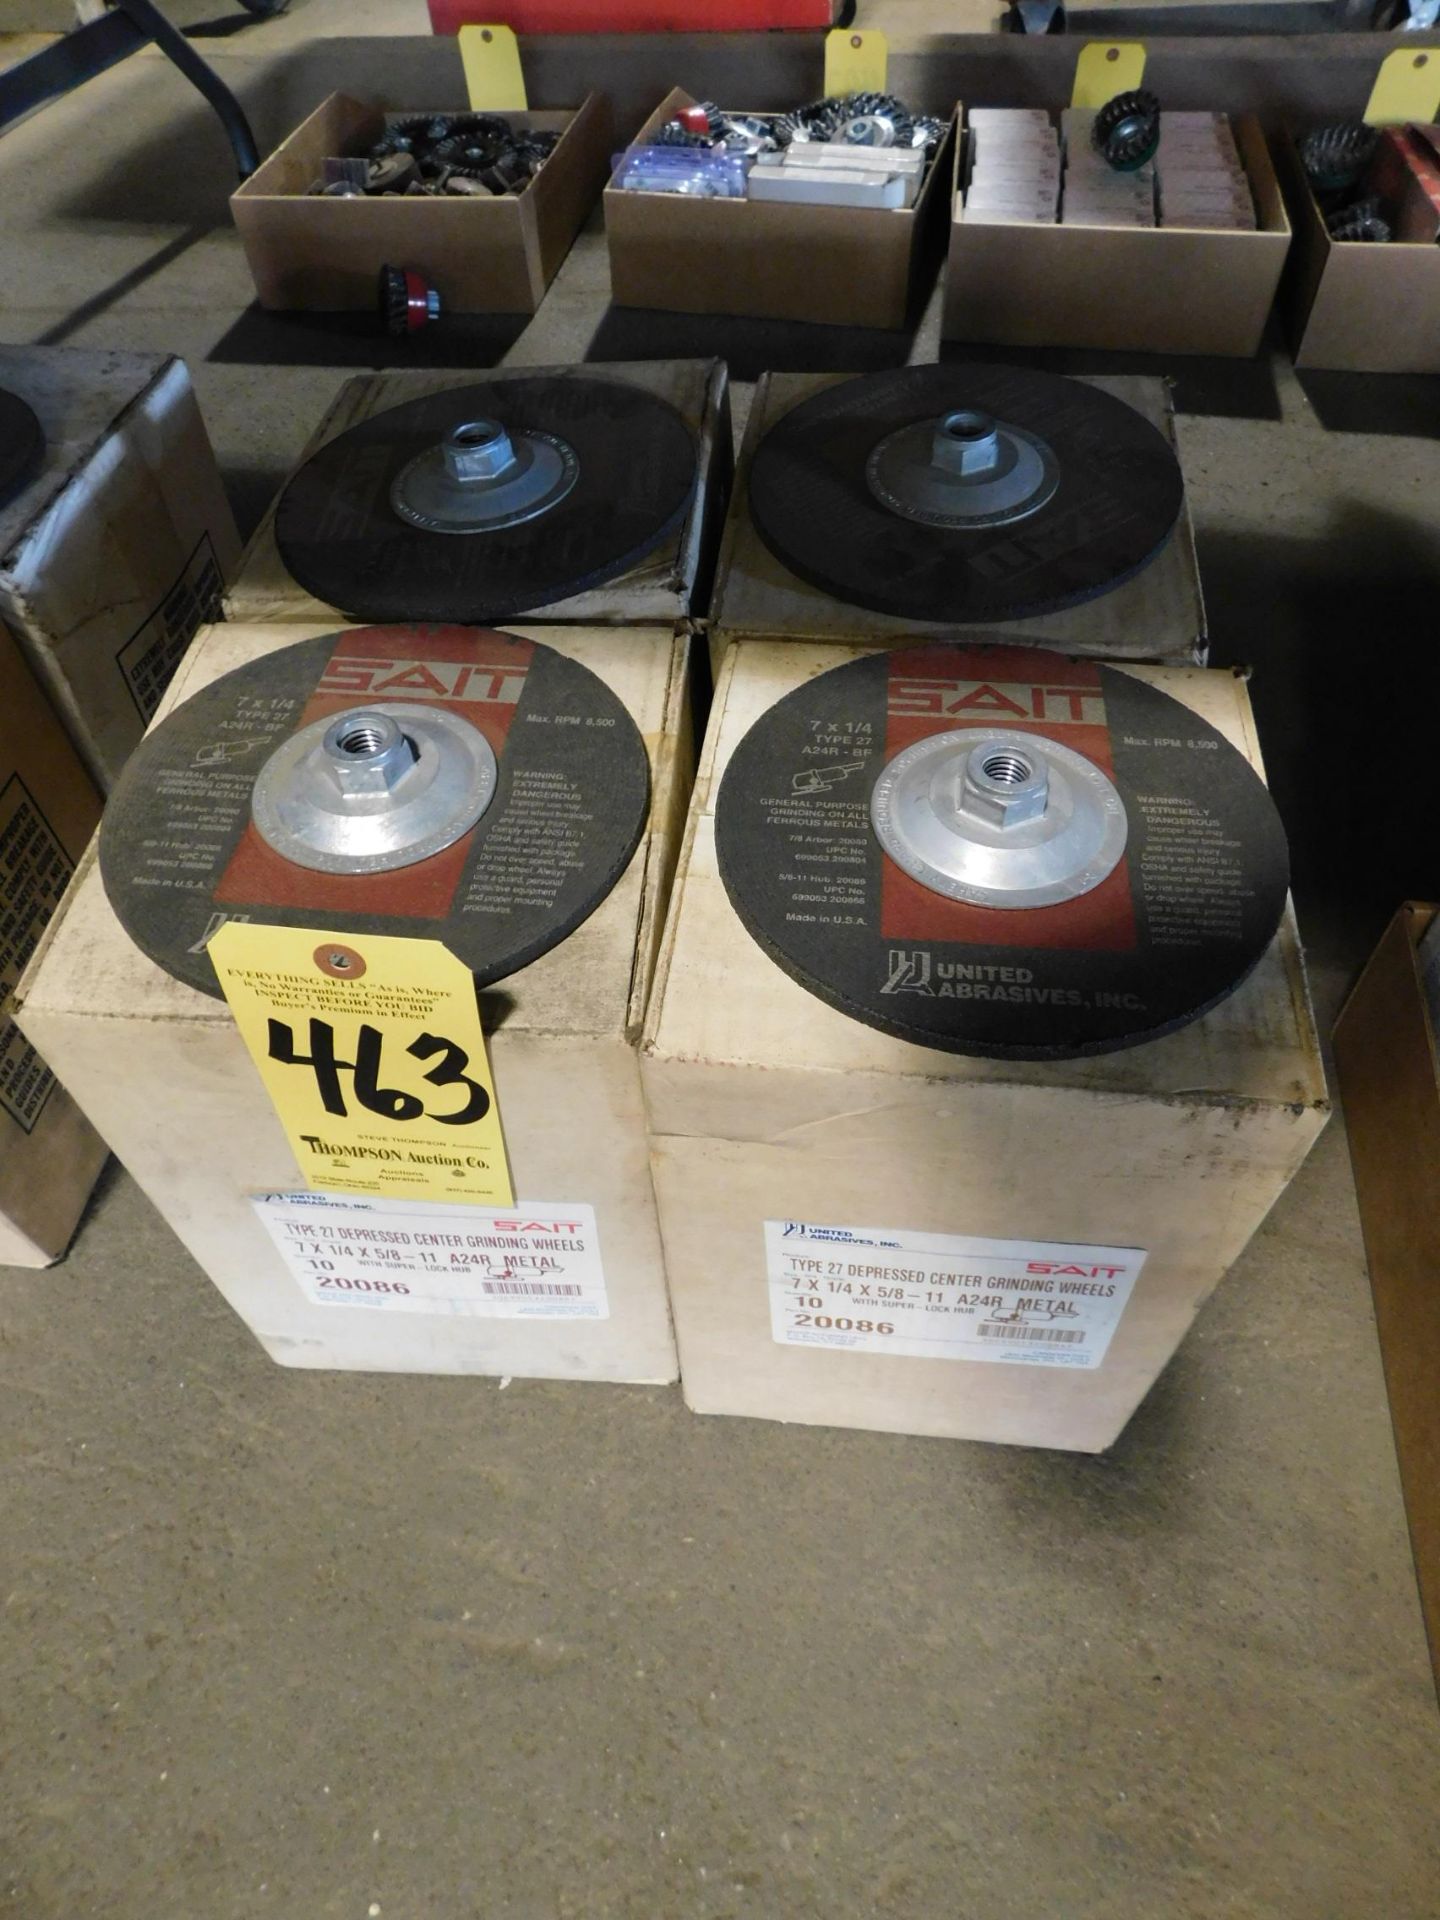 (4) Cases of Sait 7" Grinding Discs, 10 per Case